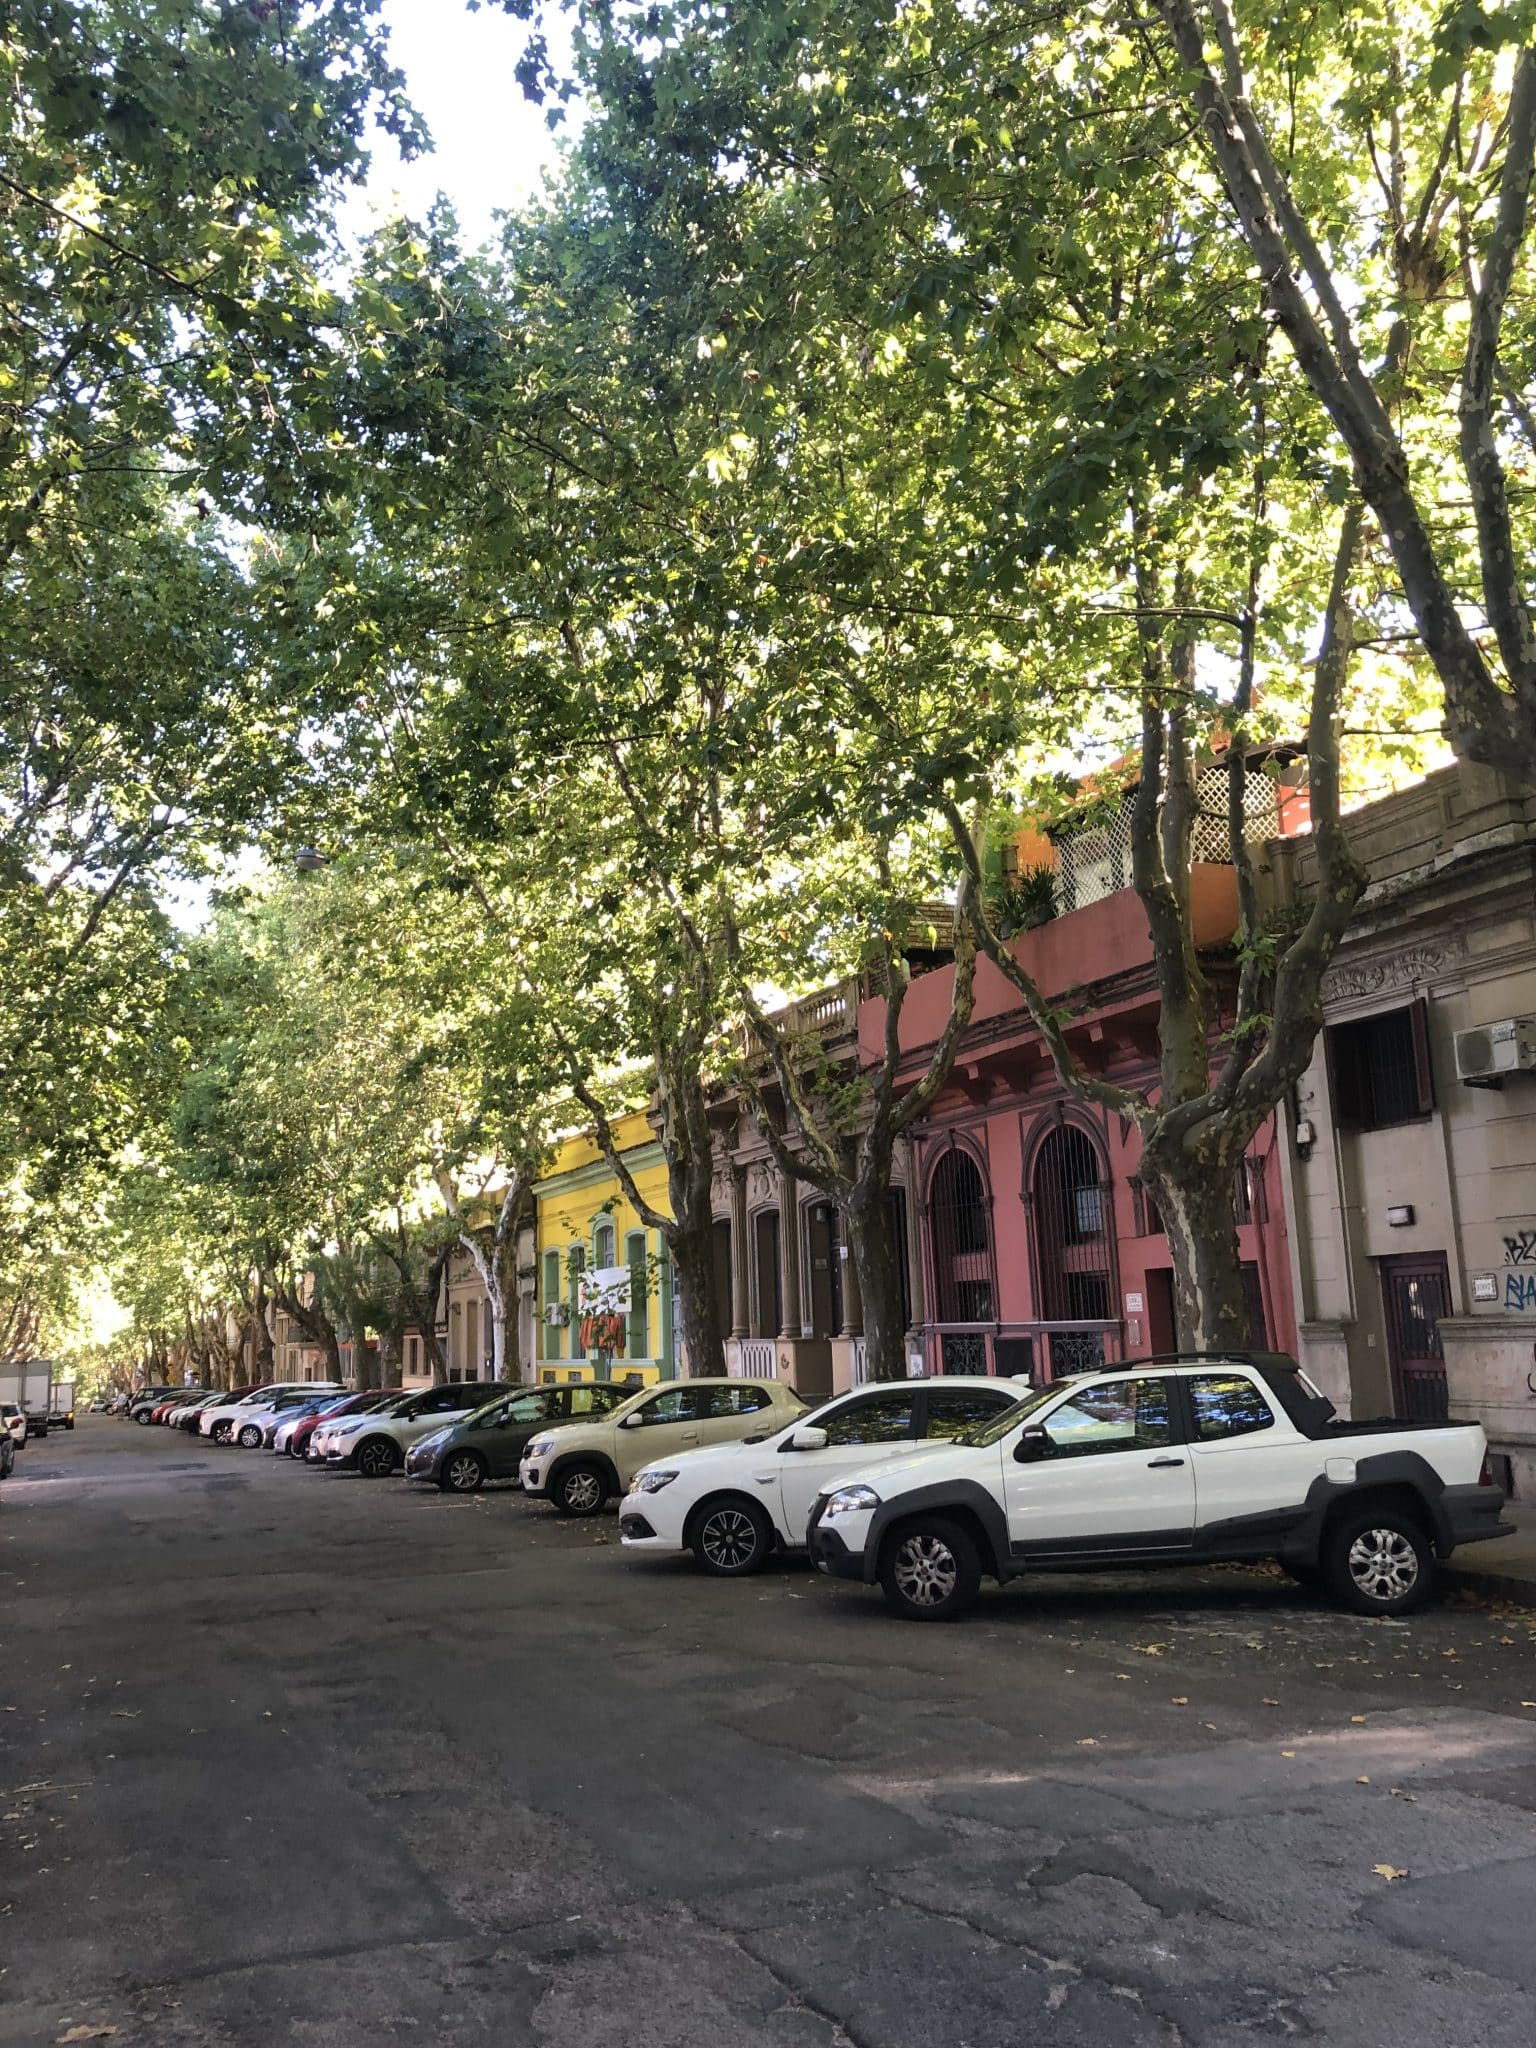 Rue colorée de Montevideo dans notre article Visiter Montevideo en Uruguay : Que faire et voir à Montevideo en 10 incontournables #visitermontevideo #montevideo #uruguay #incontournablesmontevideo #ameriquedusud